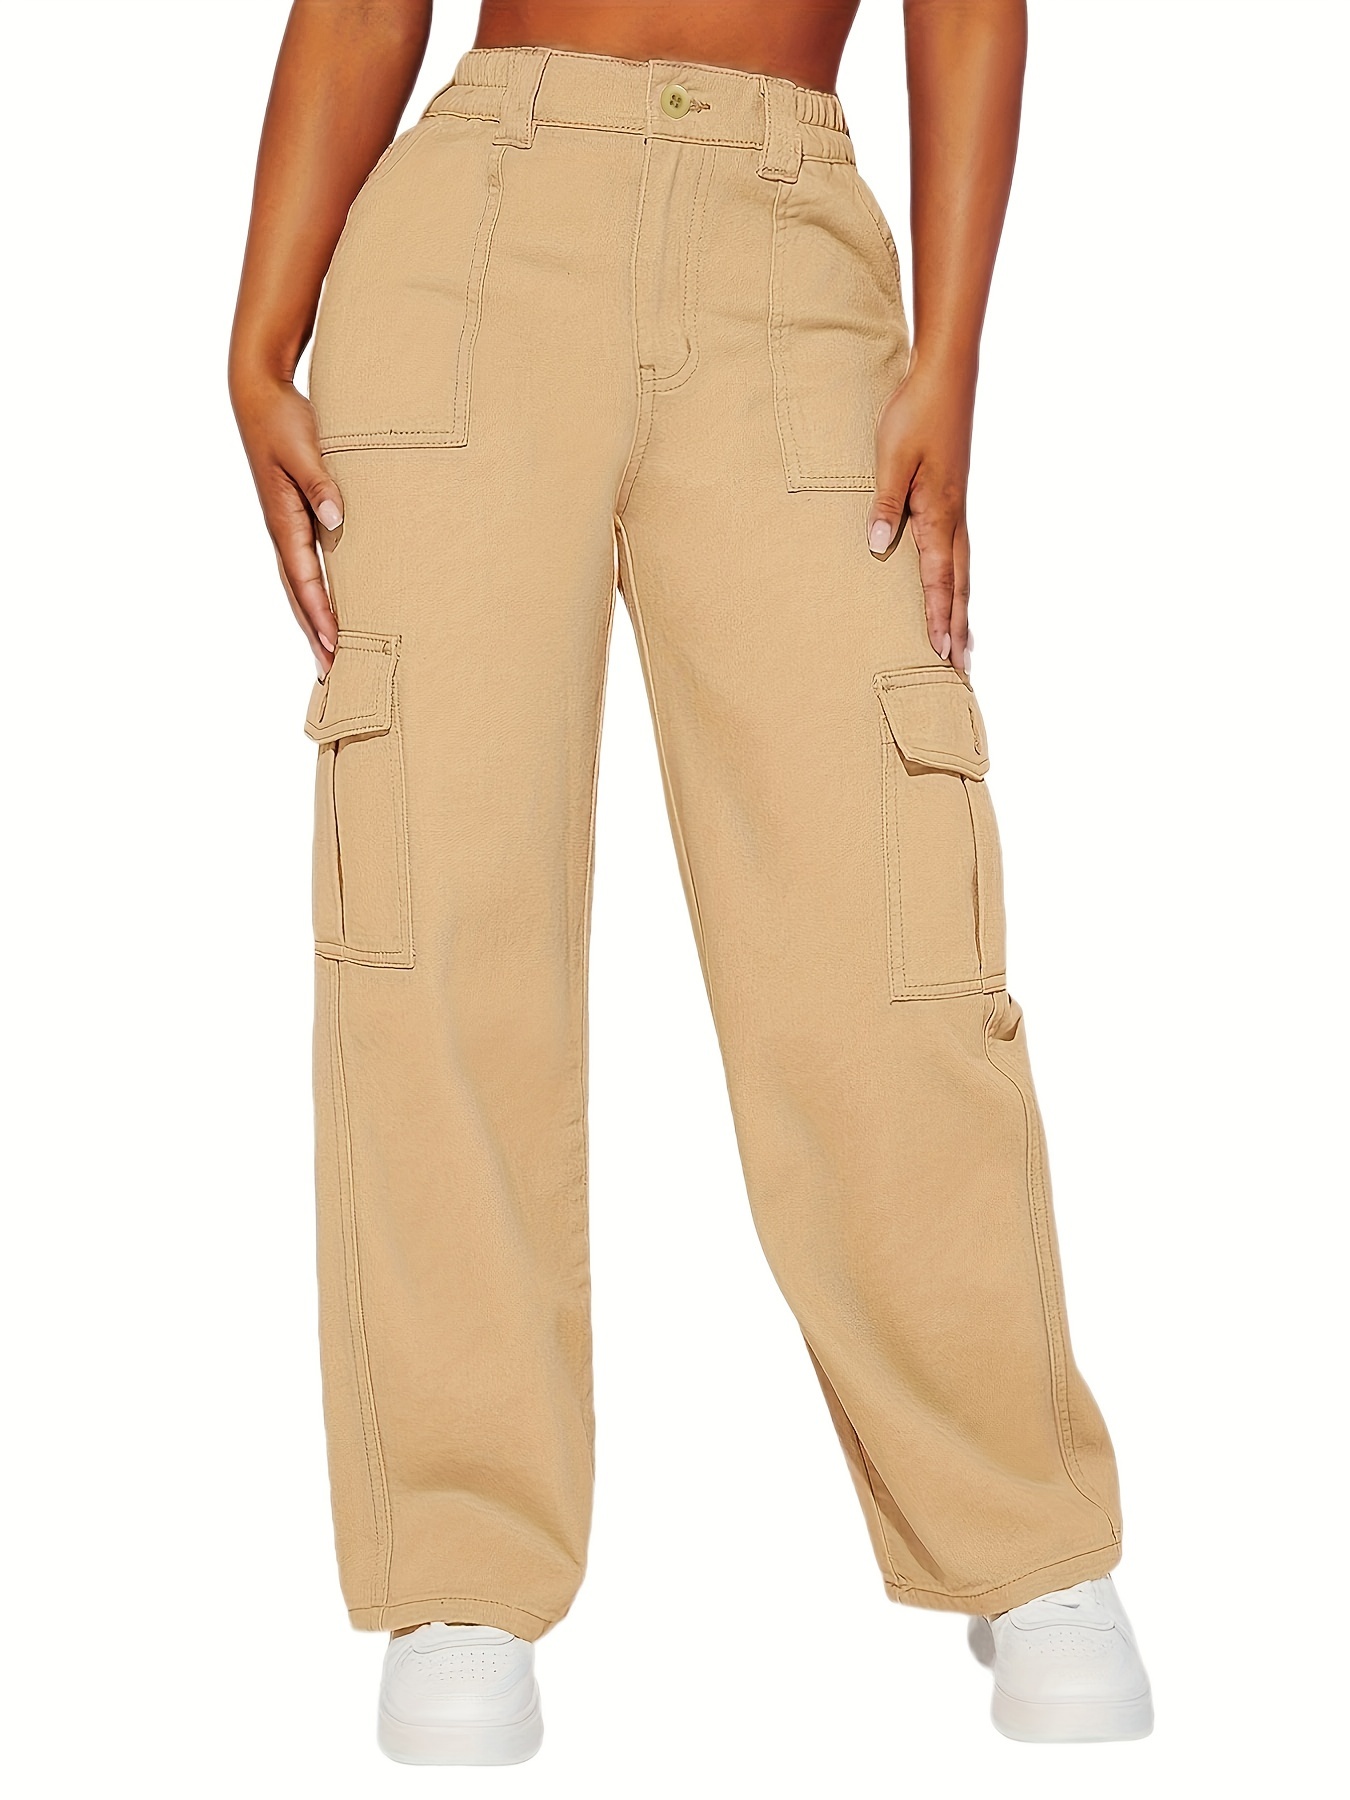 Brown Loose Flap Pockets Cargo Pants High Wide Legs - Temu Japan